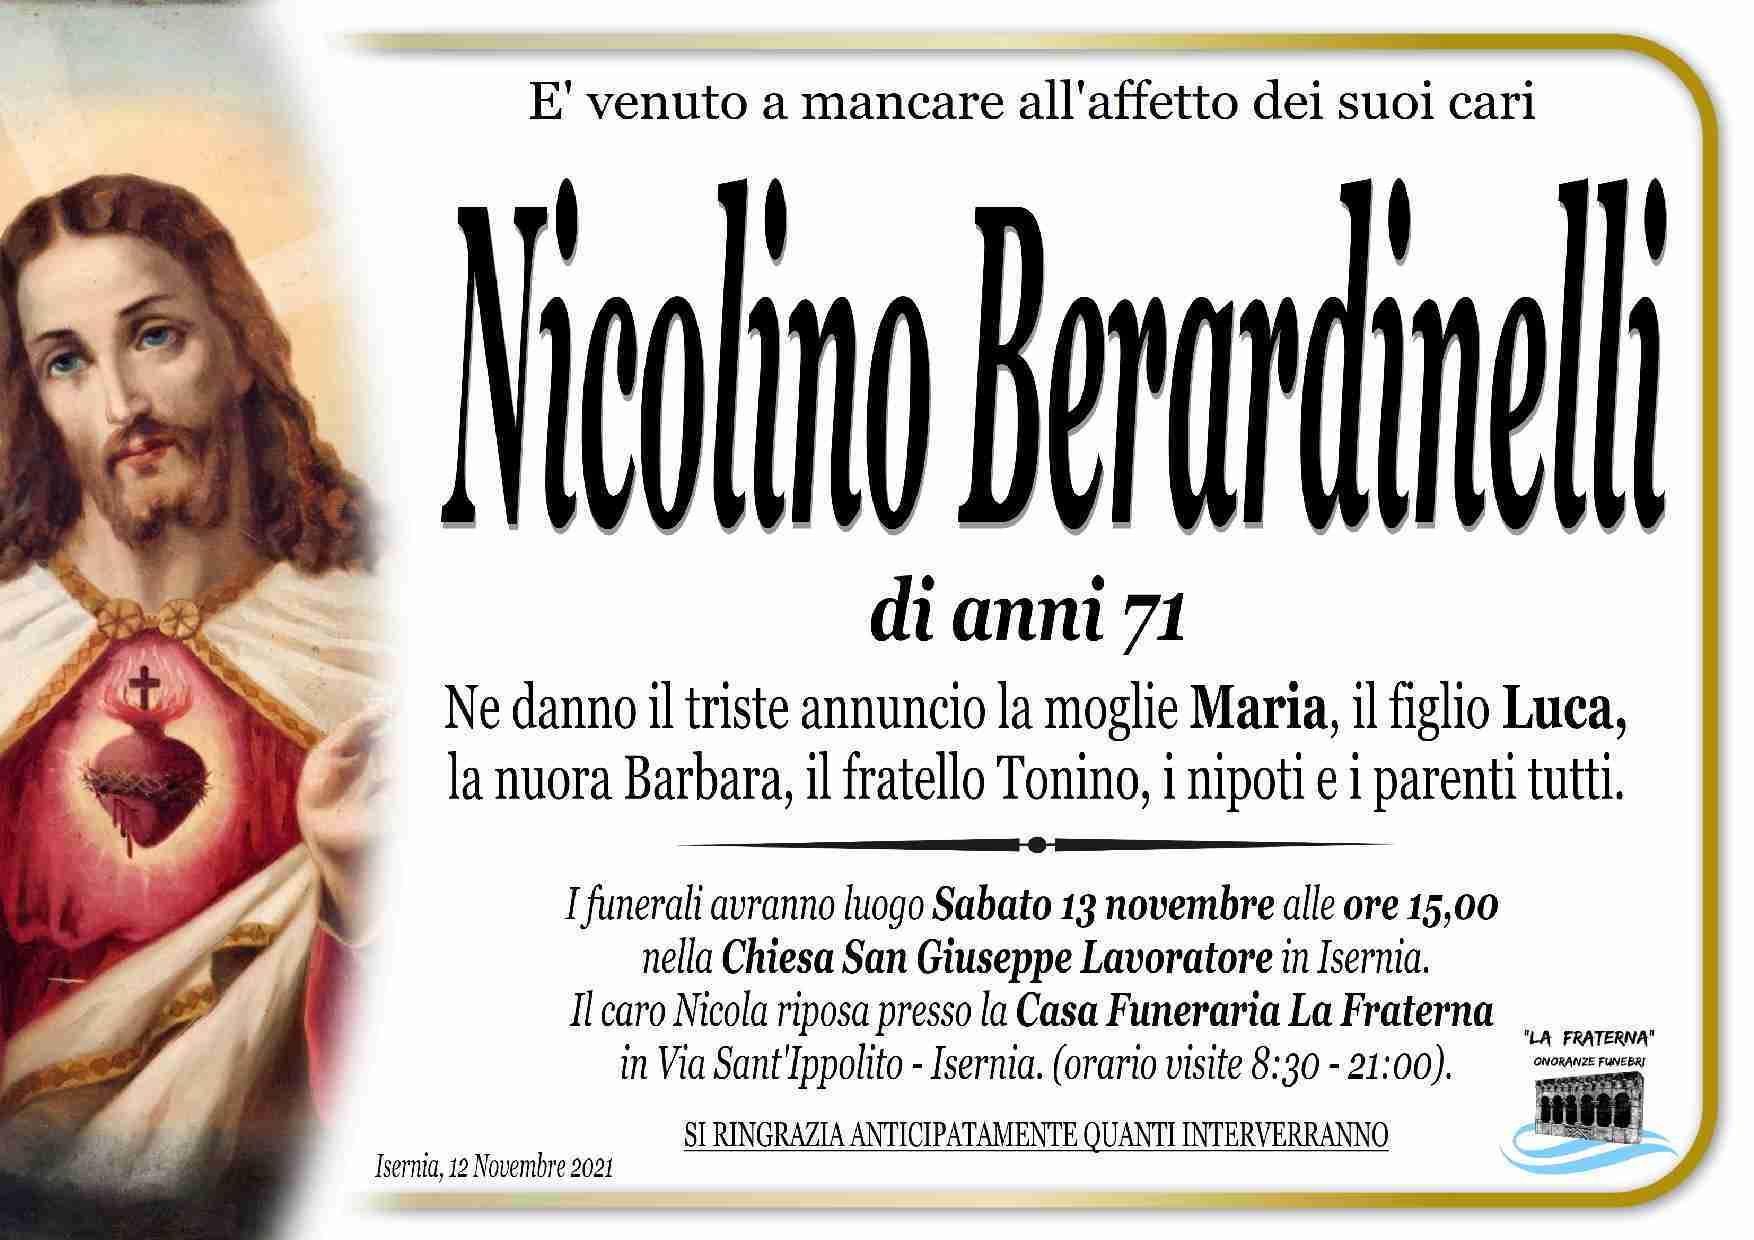 Nicolino Berardinelli